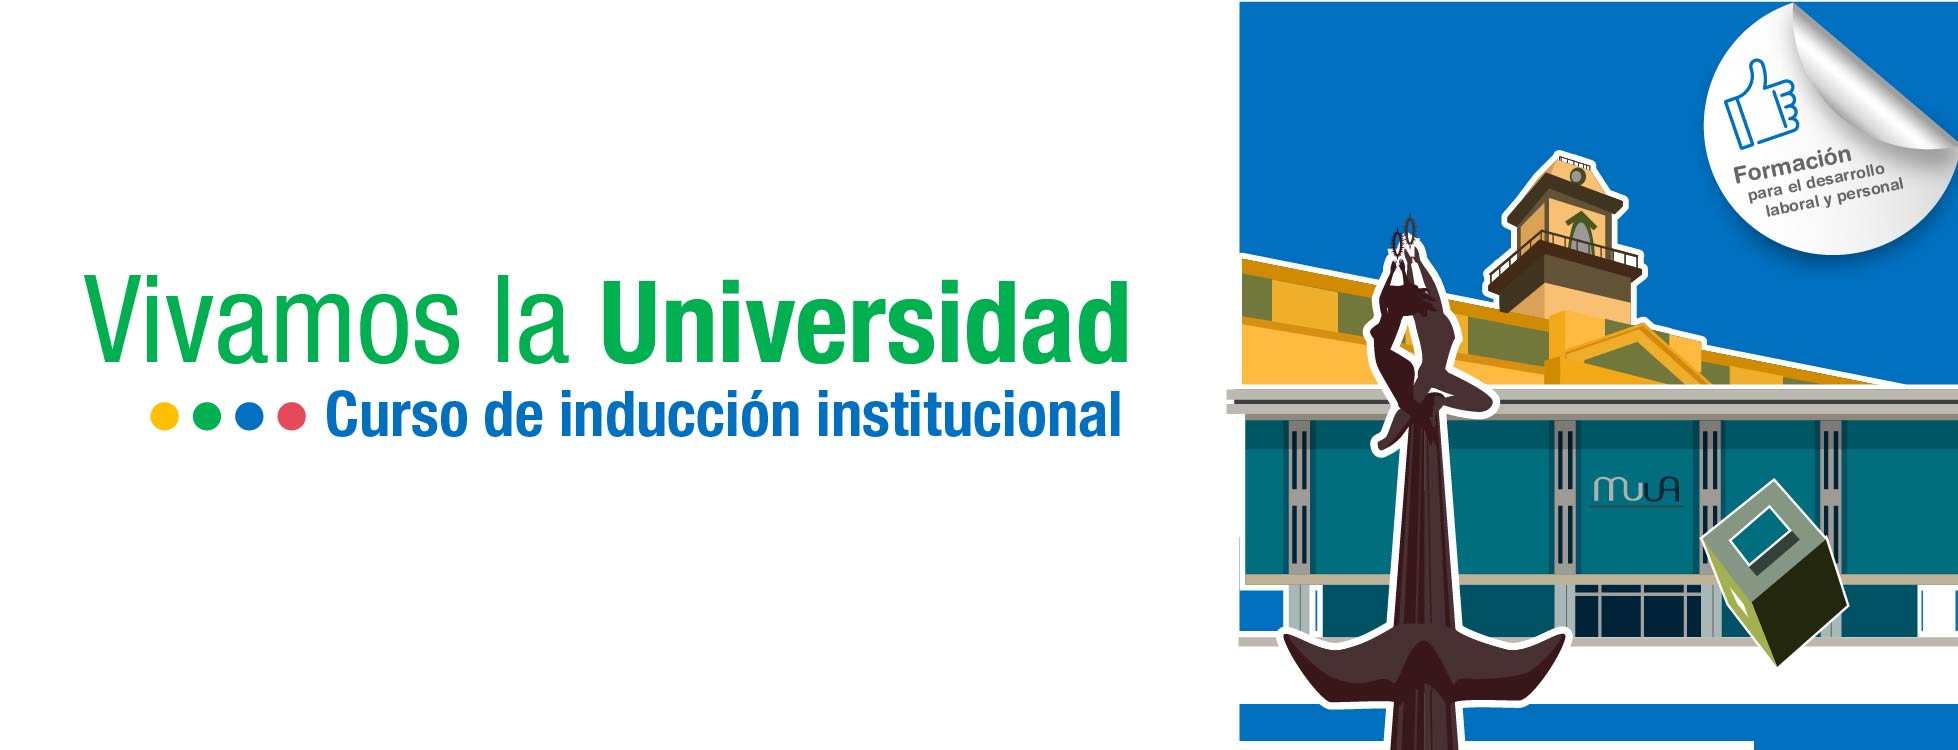 Vivamos la Universidad_Induccion